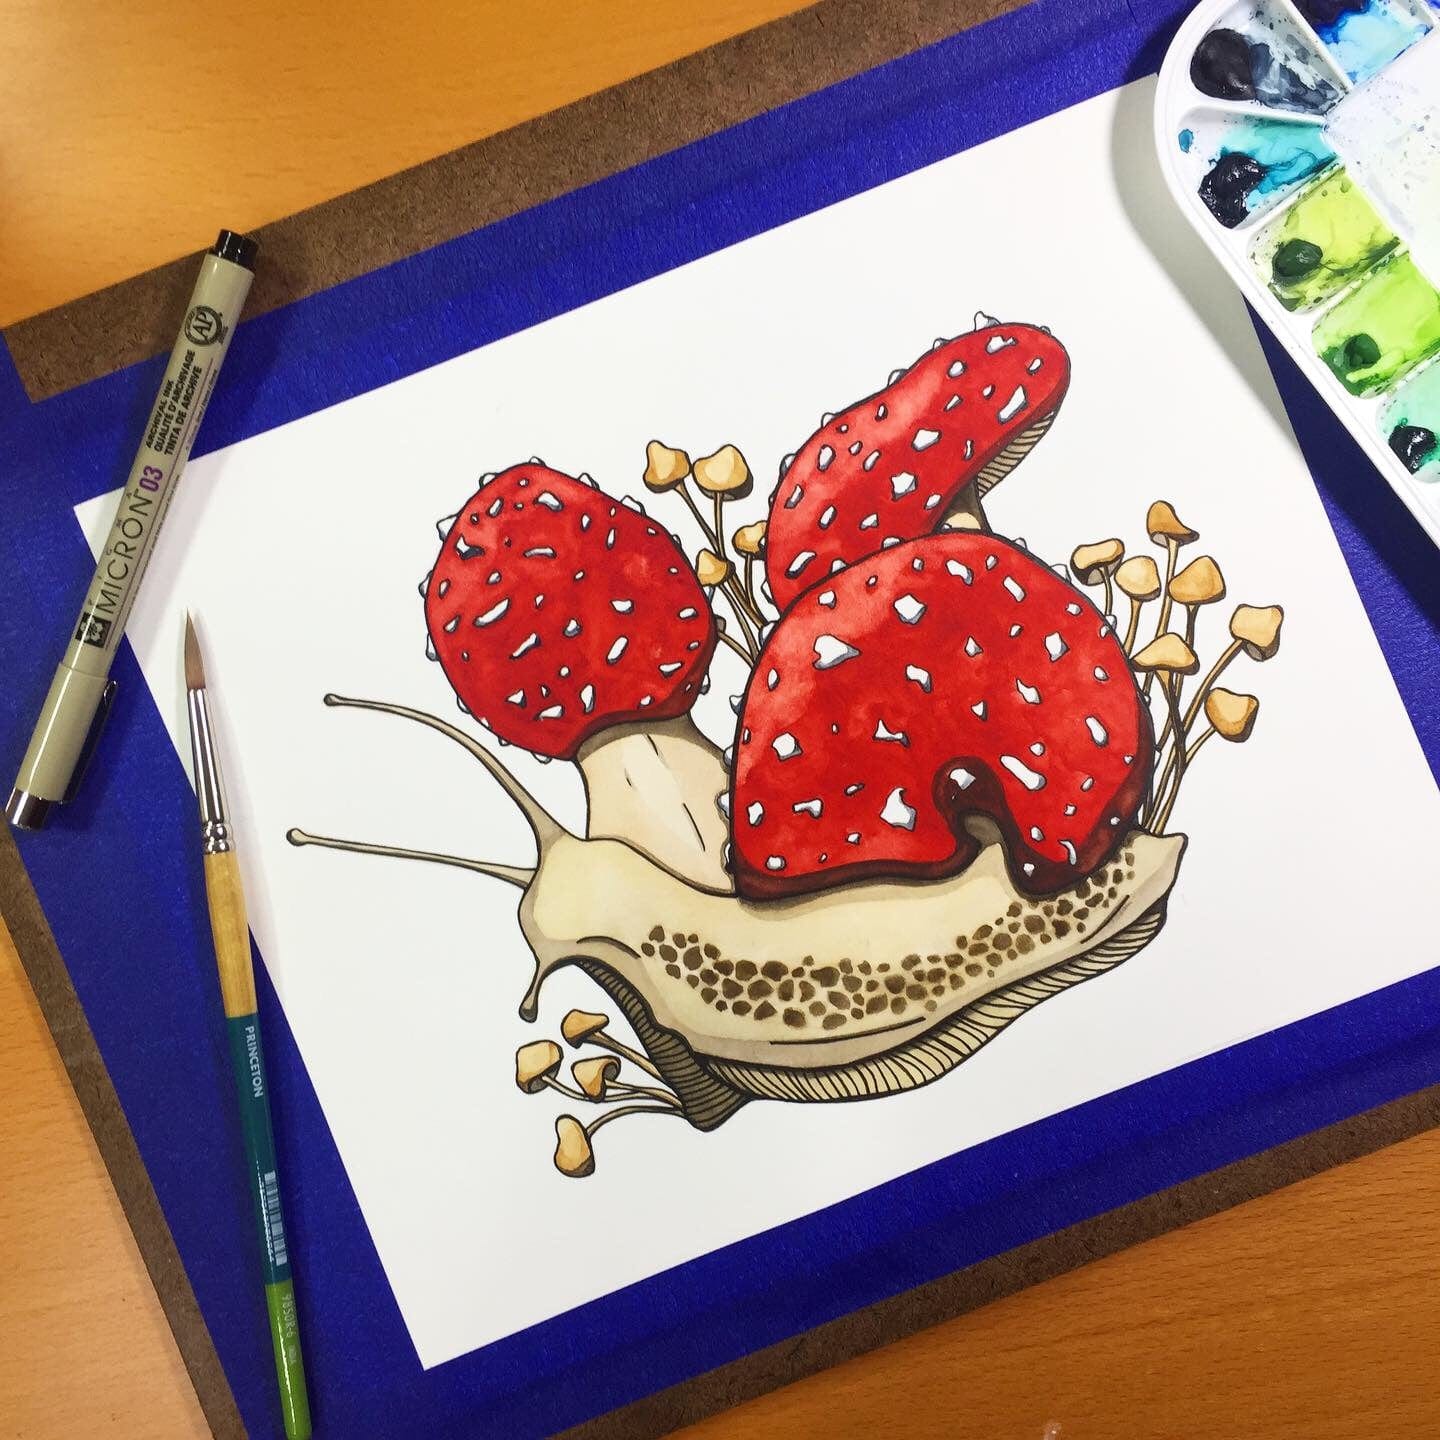 PinkPolish Design Original Art "Amanita Snail" - Fungi Inspired Original Watercolor & Ink Illustration